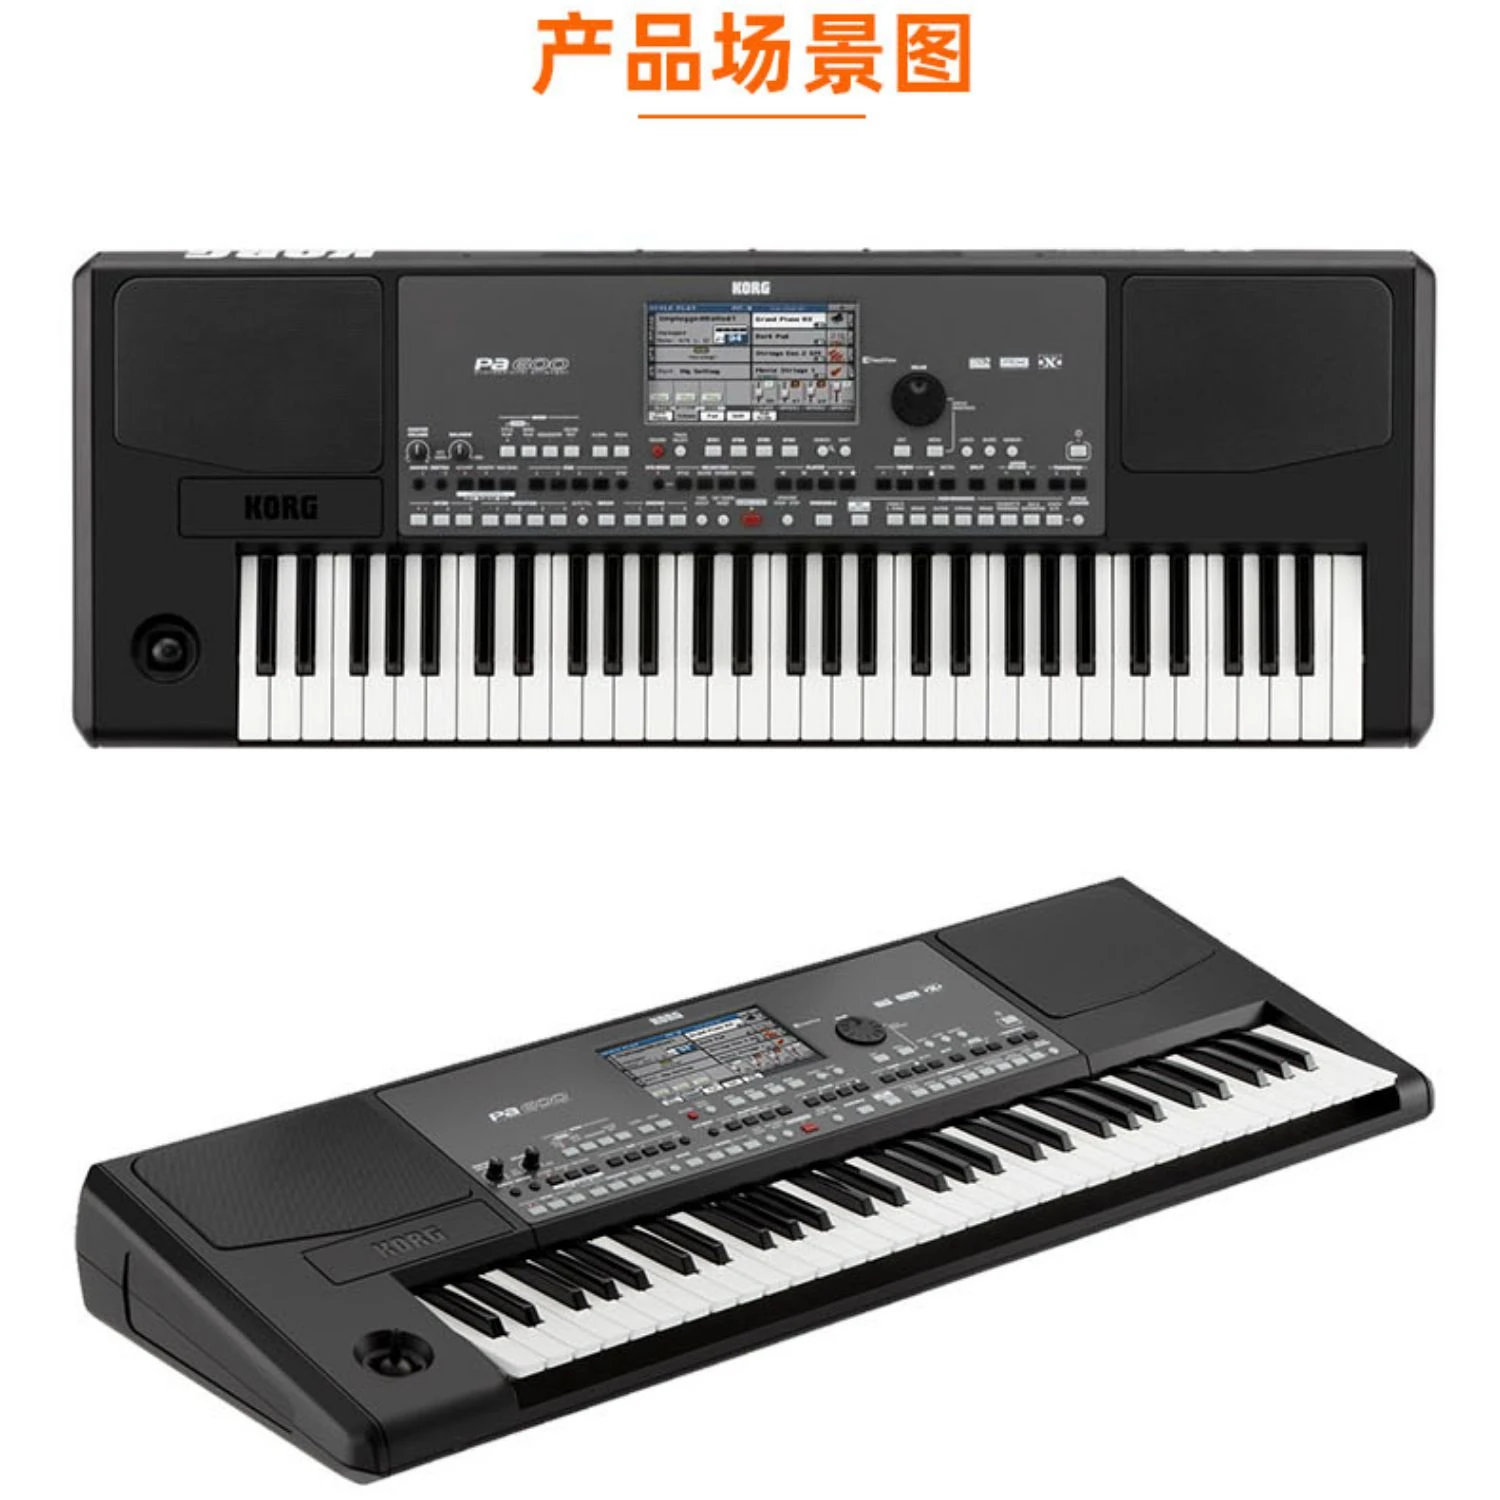 ORIGINAL NEW KORG PA 600 PA600 Key keyboard PA 600 Professional Arranger Piano